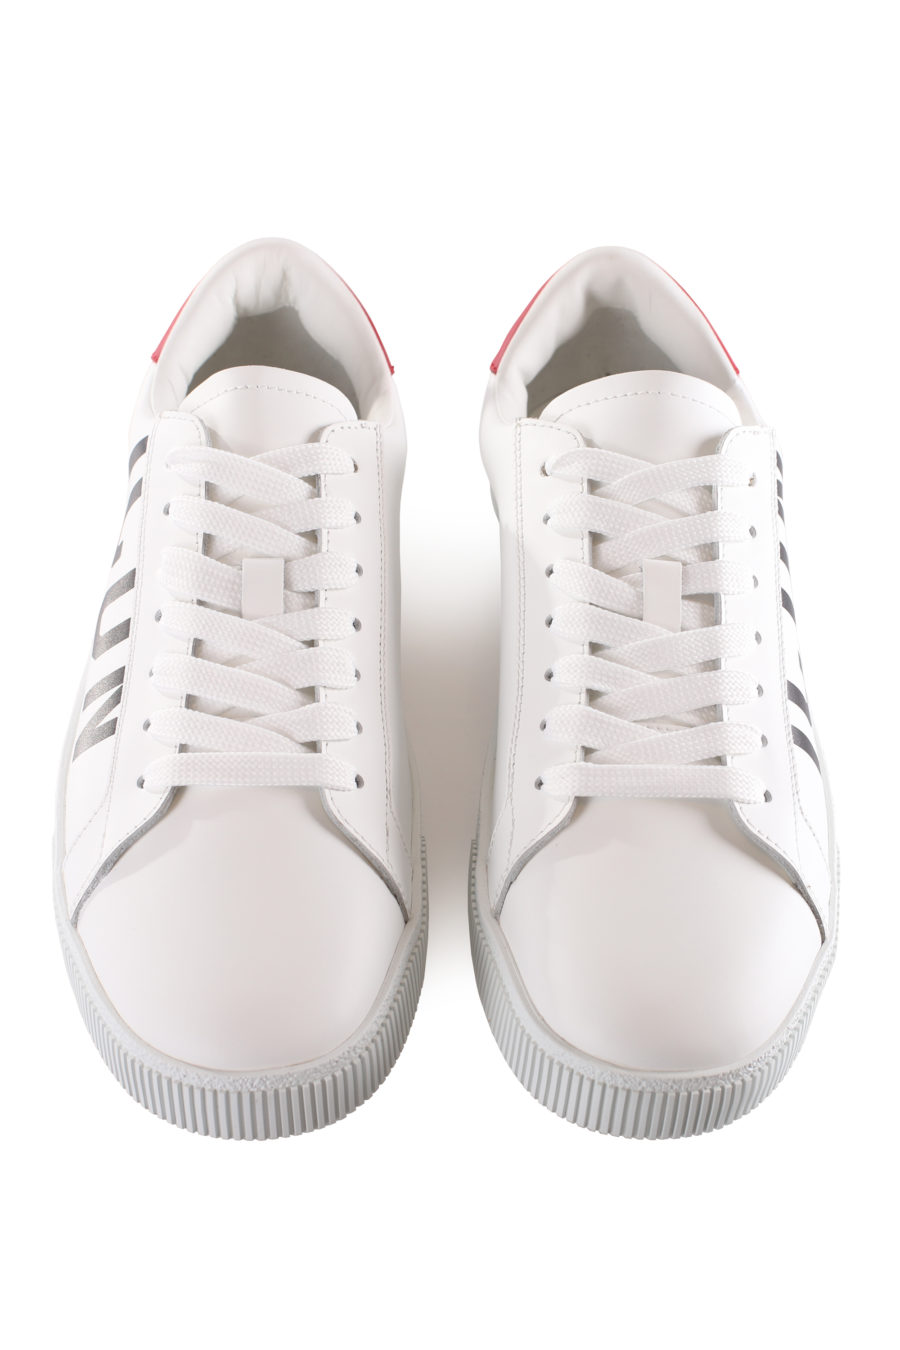 Zapatillas blancas con logo "icon" diagonal y detalle rojo - IMG 9537